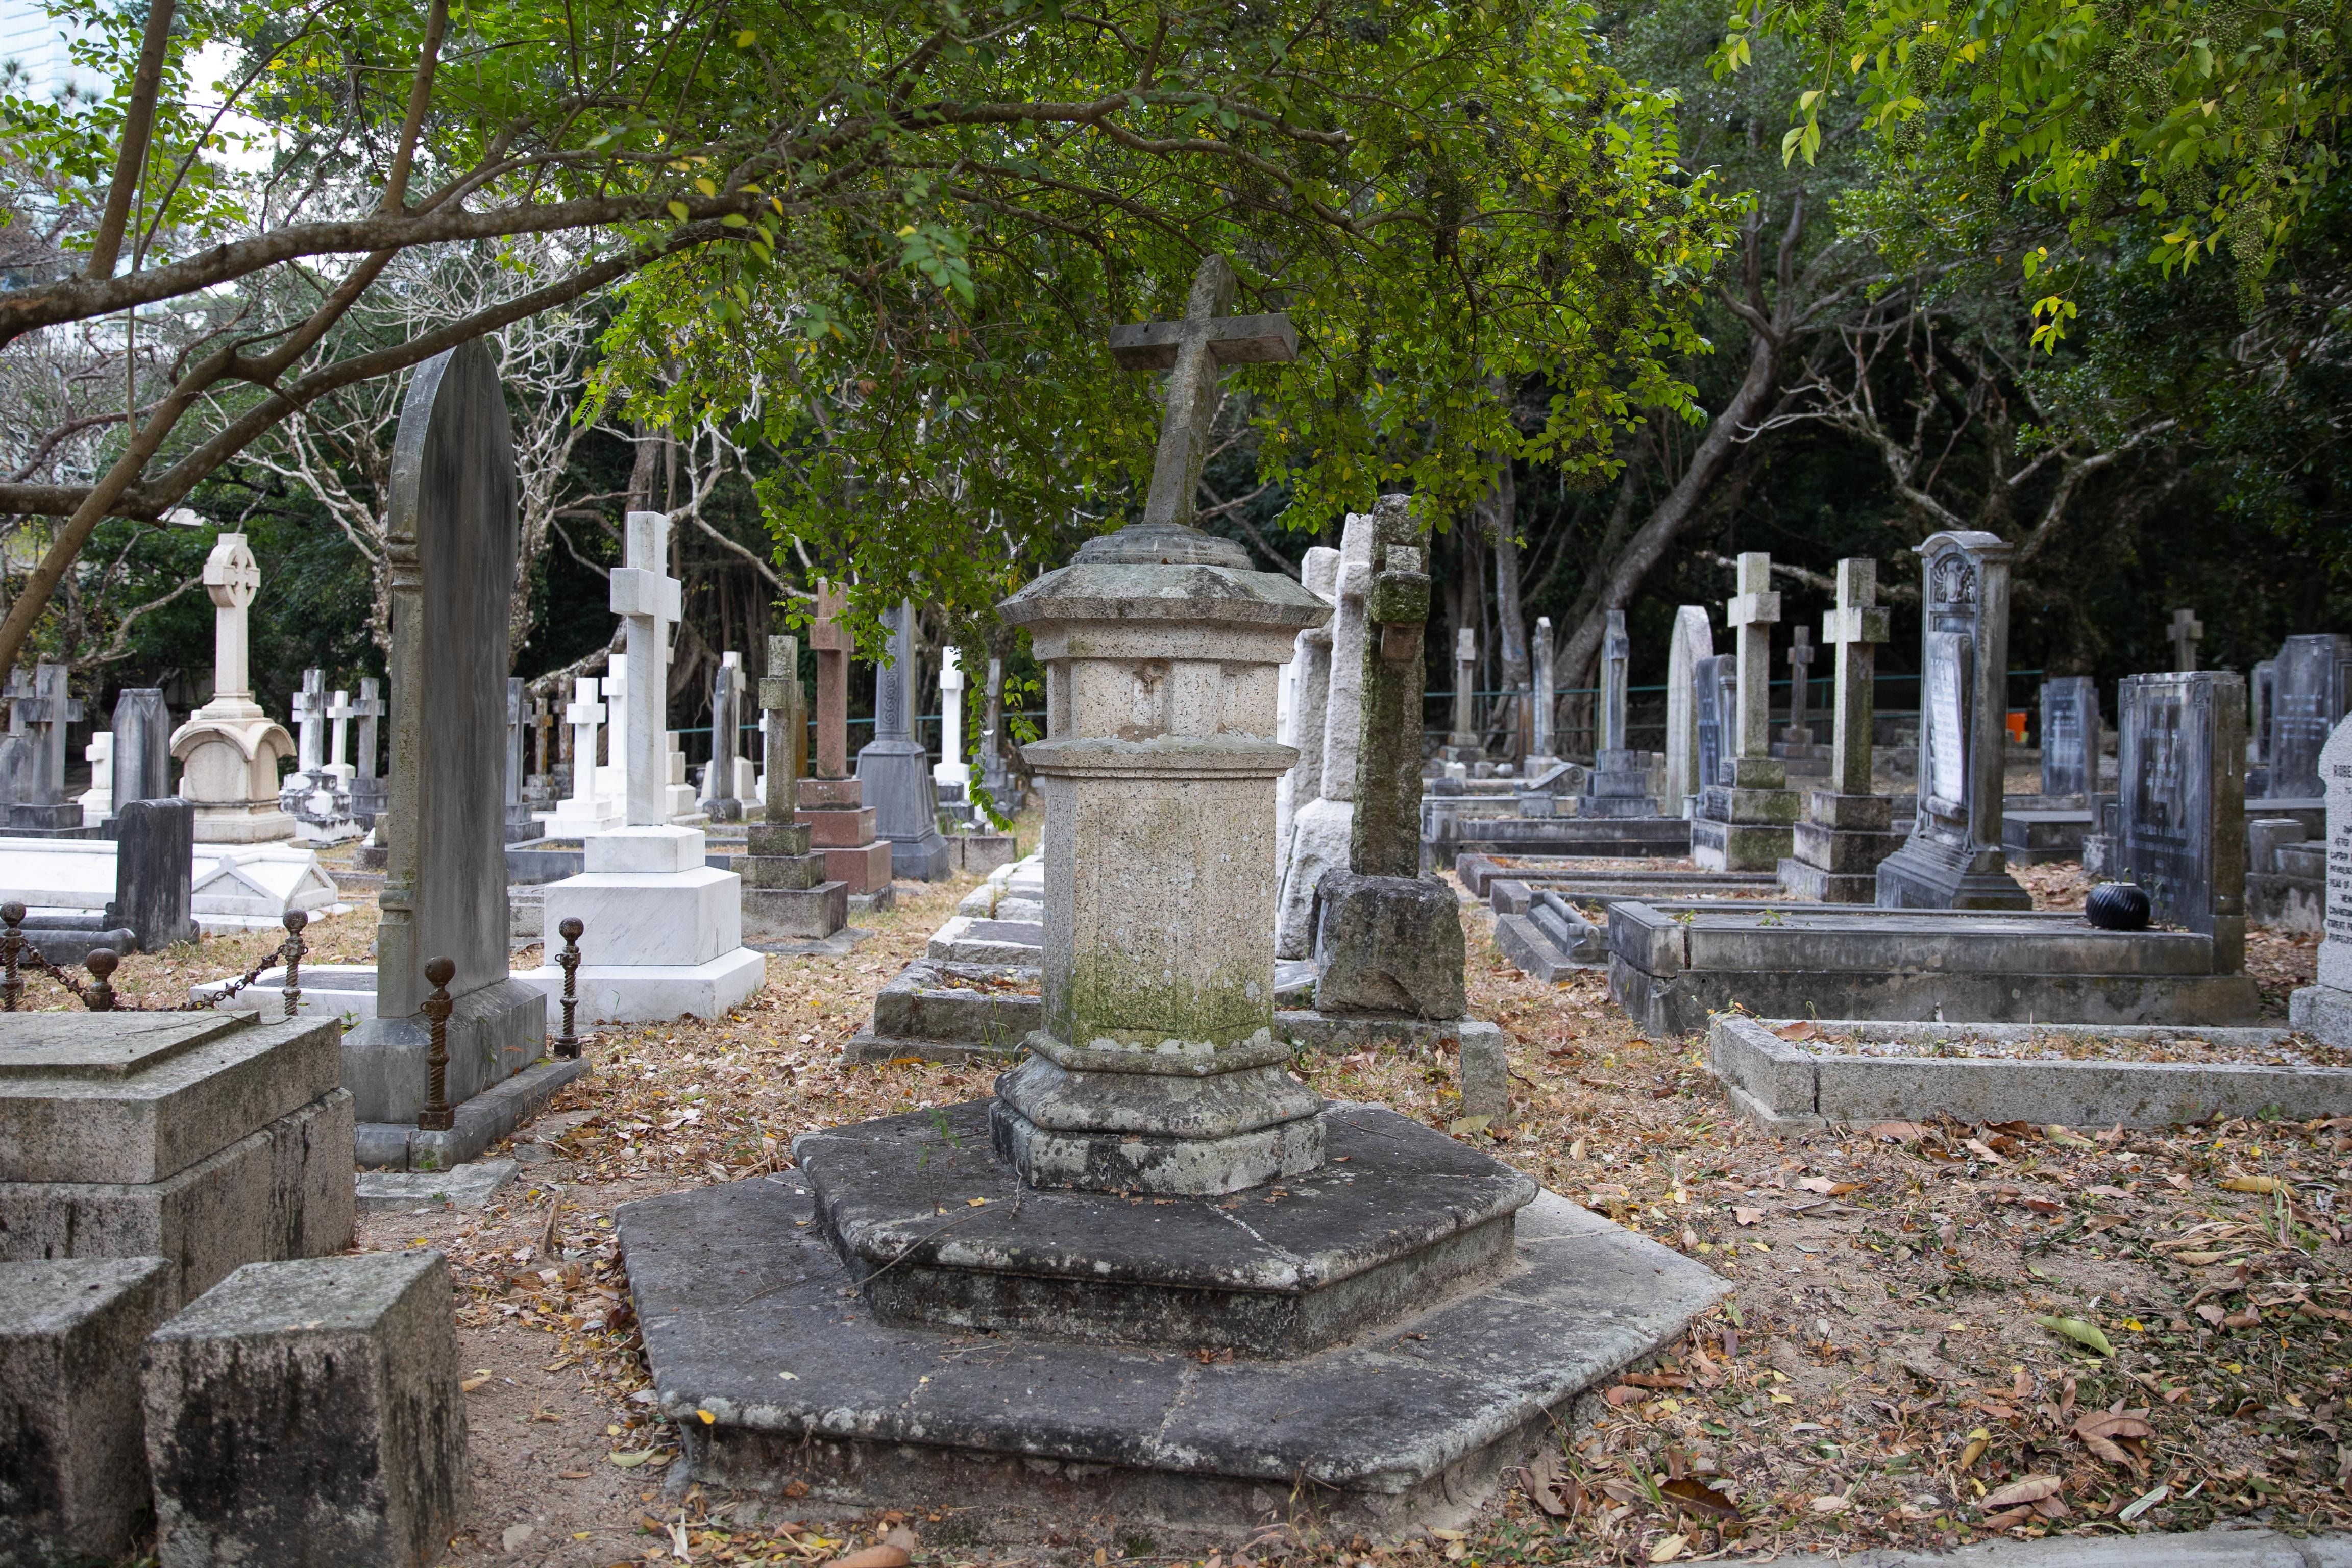 香港坟场属本港早期香港墓园，由当年英国政府引入欧洲十九世纪的花园墓园概念来港建立，当时由英国圣公会管理，初期没有定名，由于较多外国人落葬，当年又称为「红毛坟场」。(资料图片)